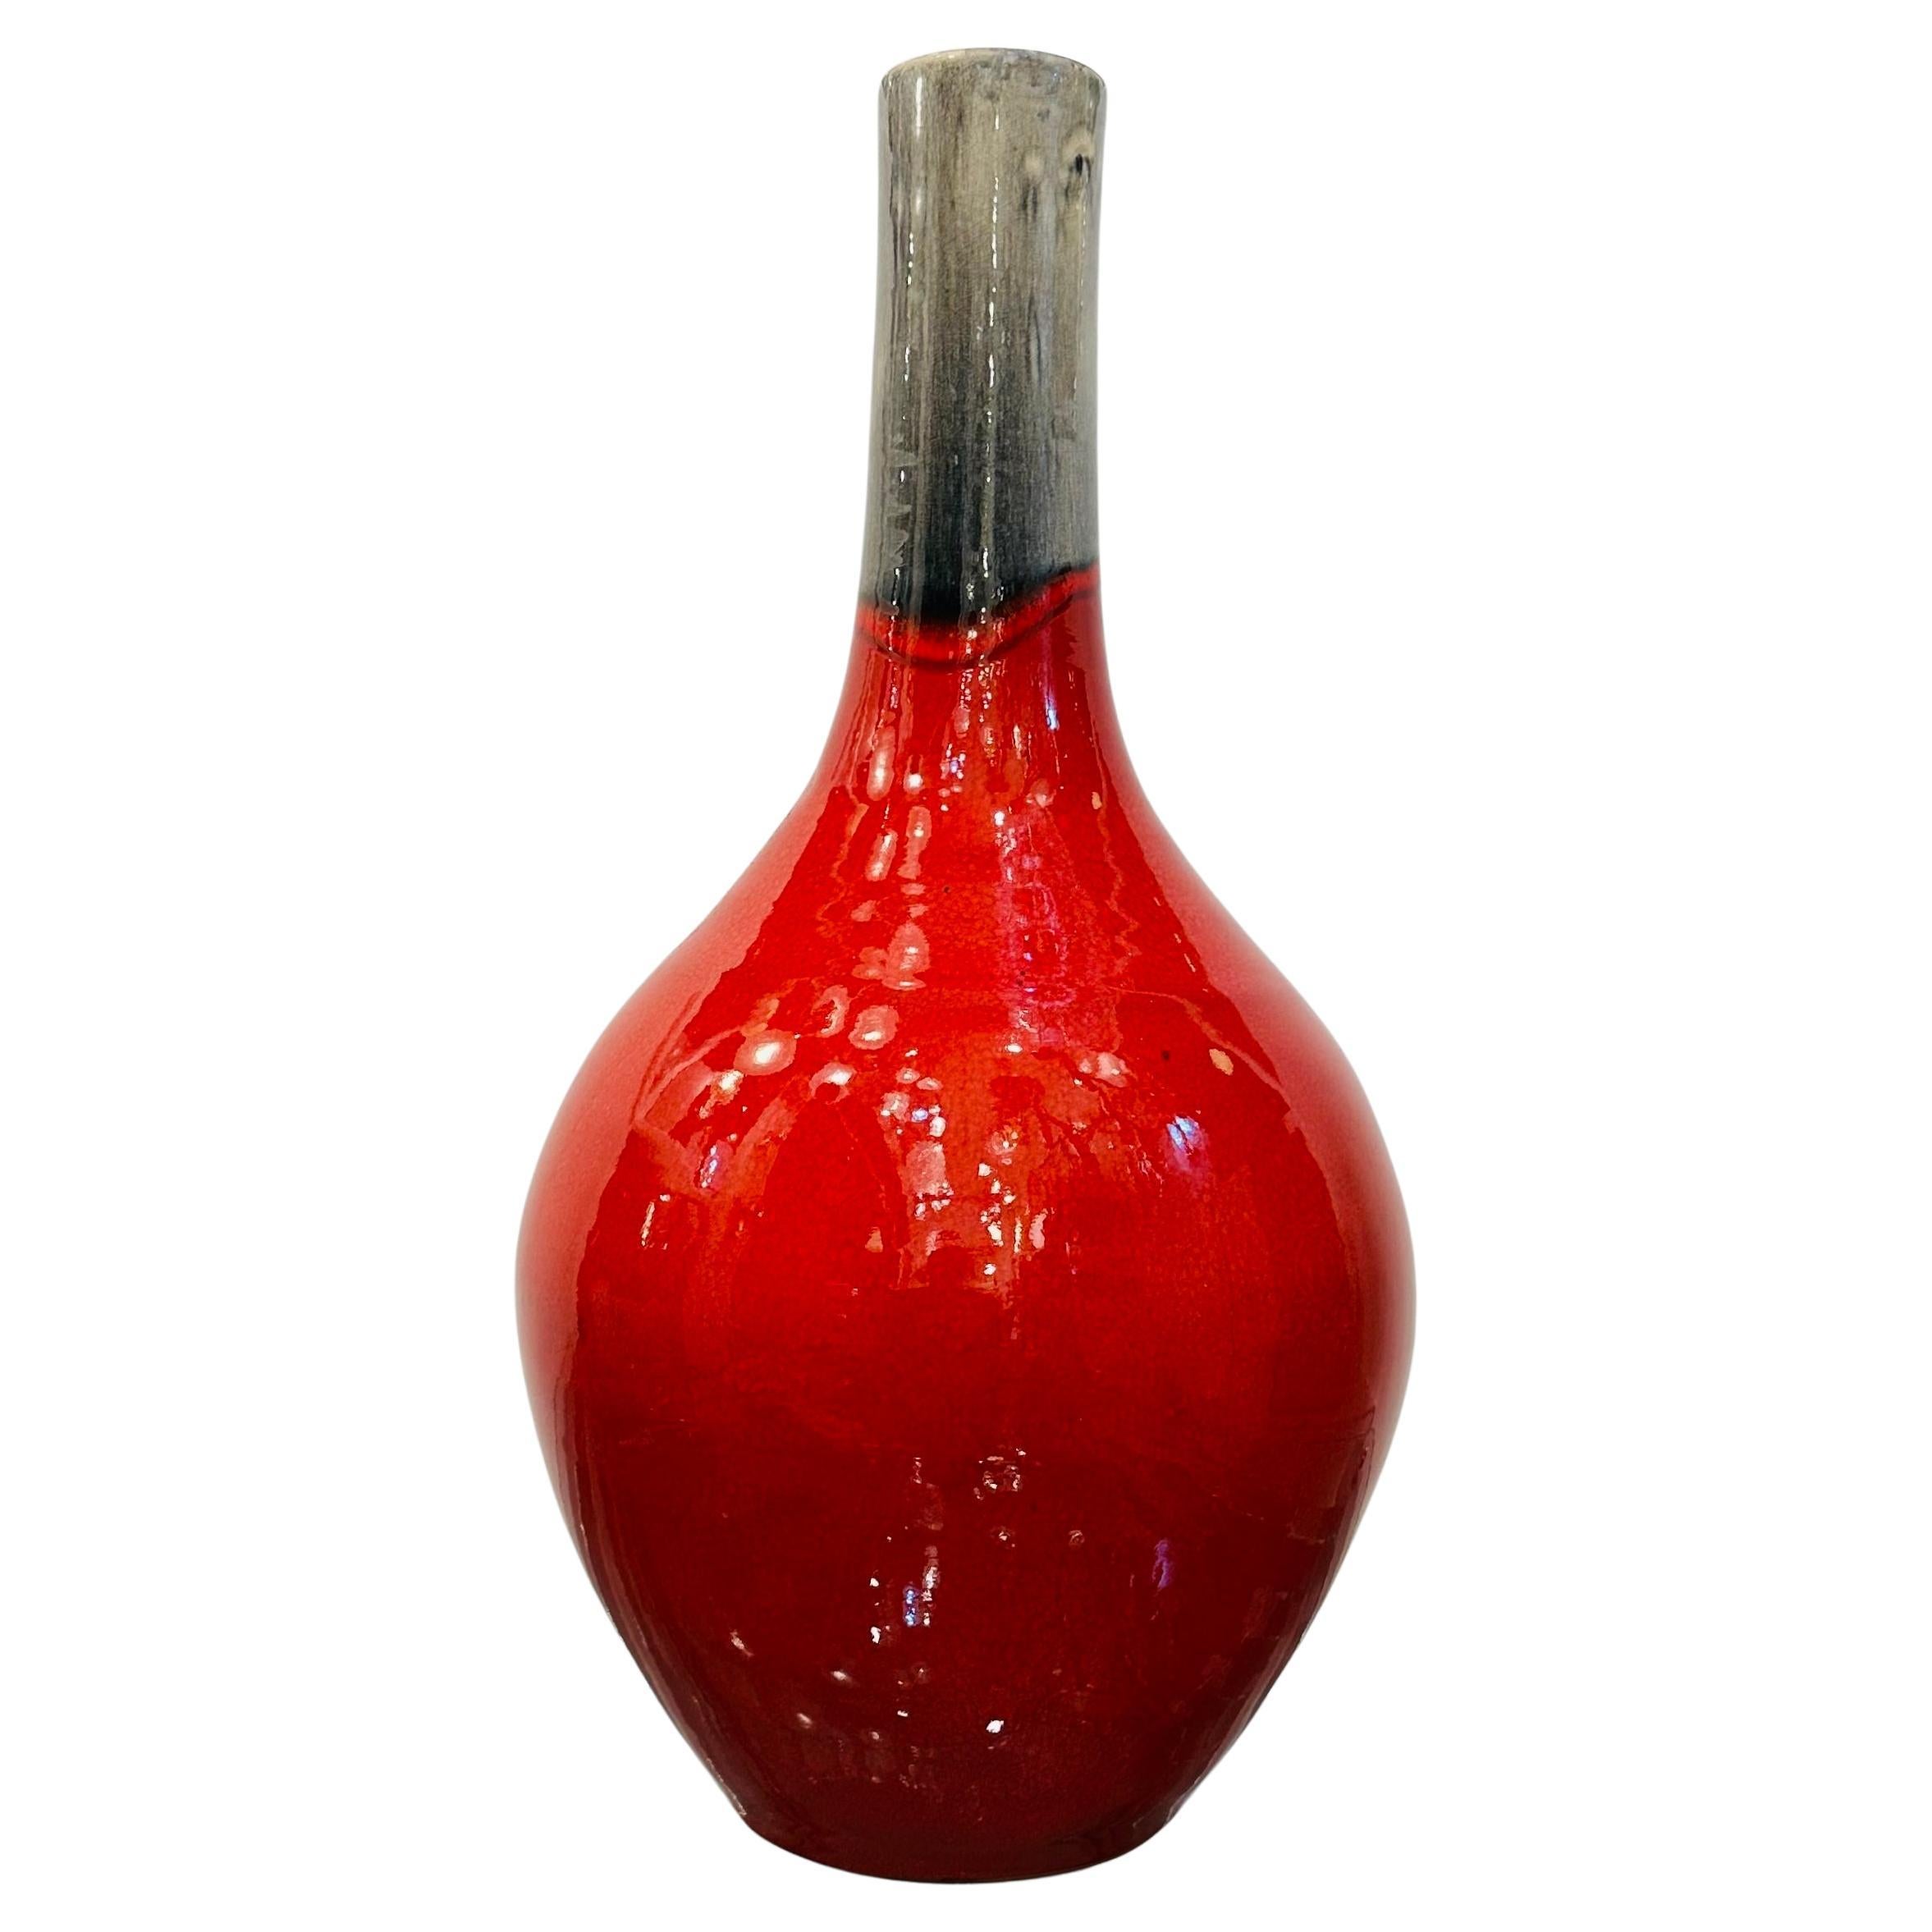 Vase italien vintage des années 1970, rouge et gris mouchetés en céramique Molten hautement émaillée